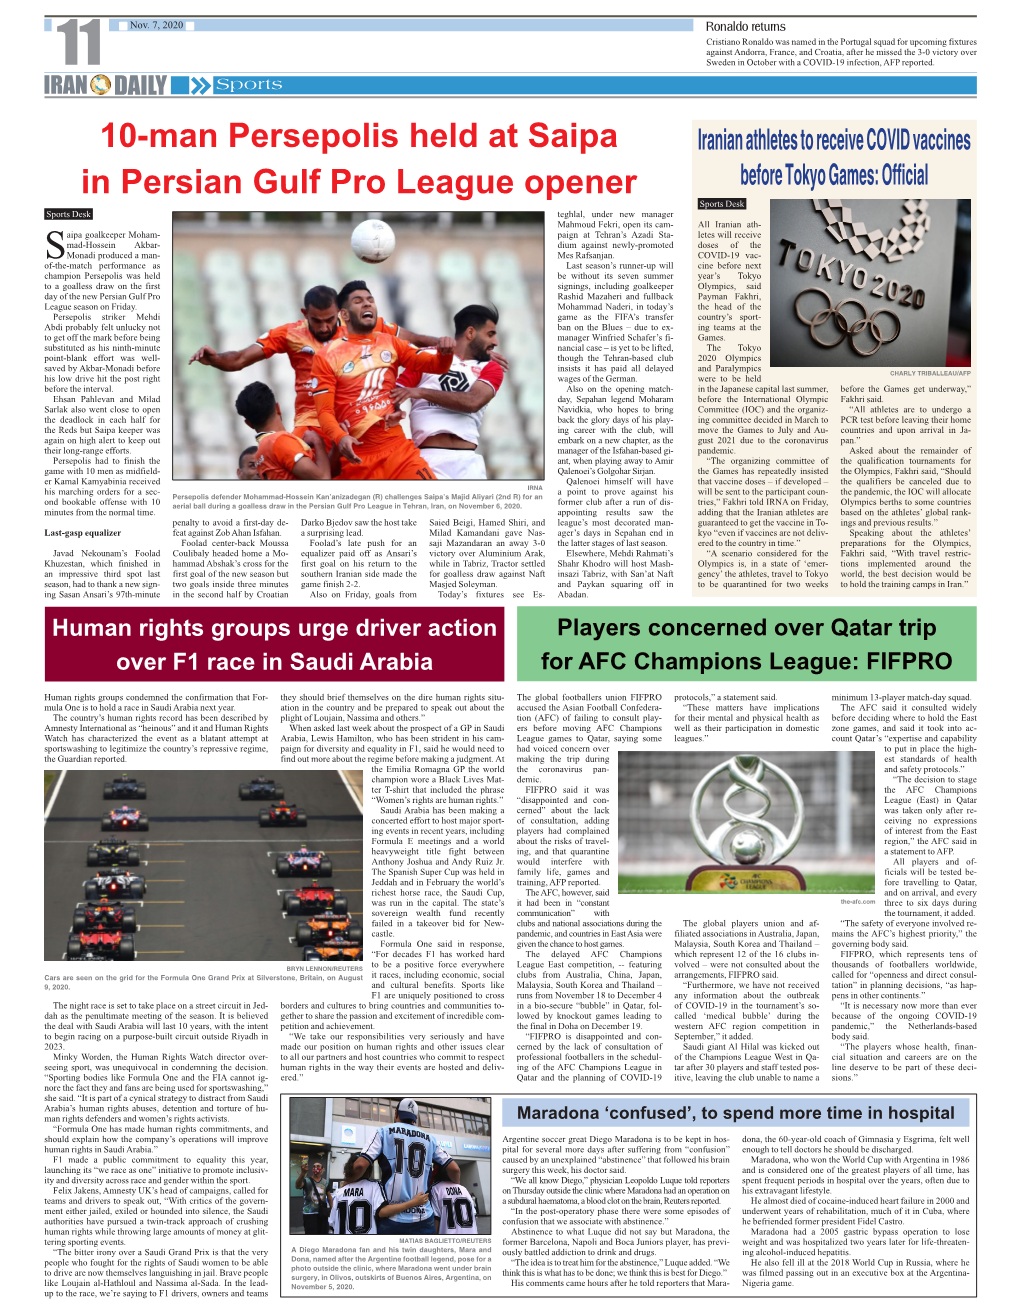 10-Man Persepolis Held at Saipa in Persian Gulf Pro League Opener